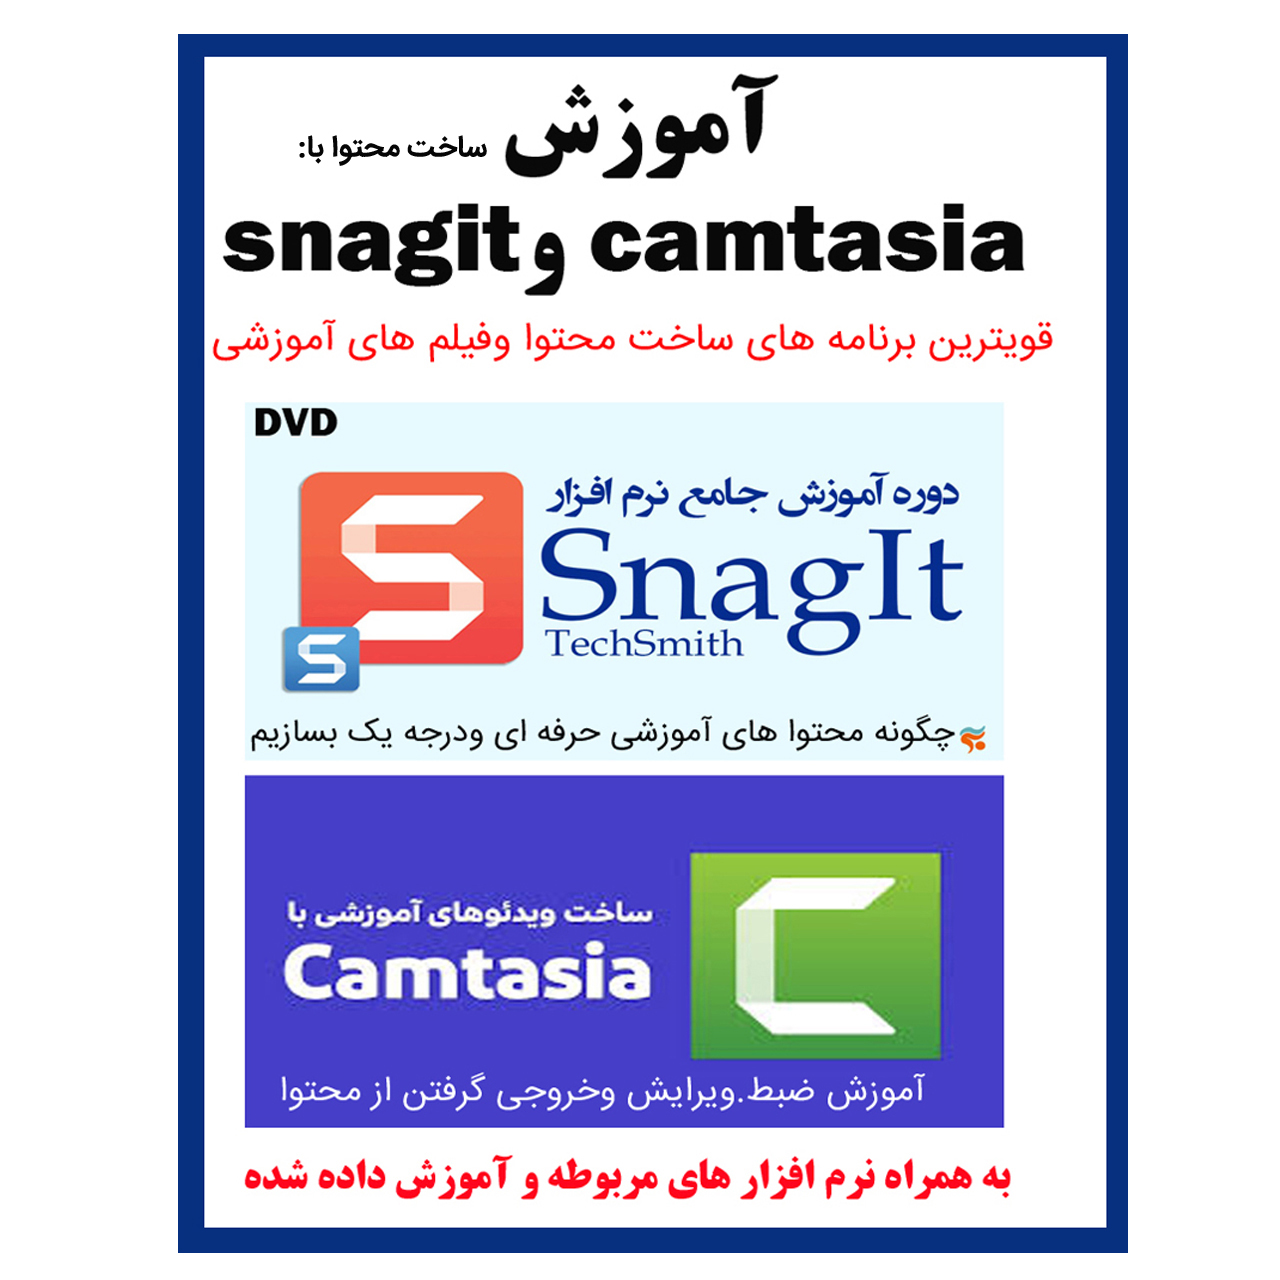 نرم افزار آموزش ساخت محتوا با camtasia و snagit نشر کاران